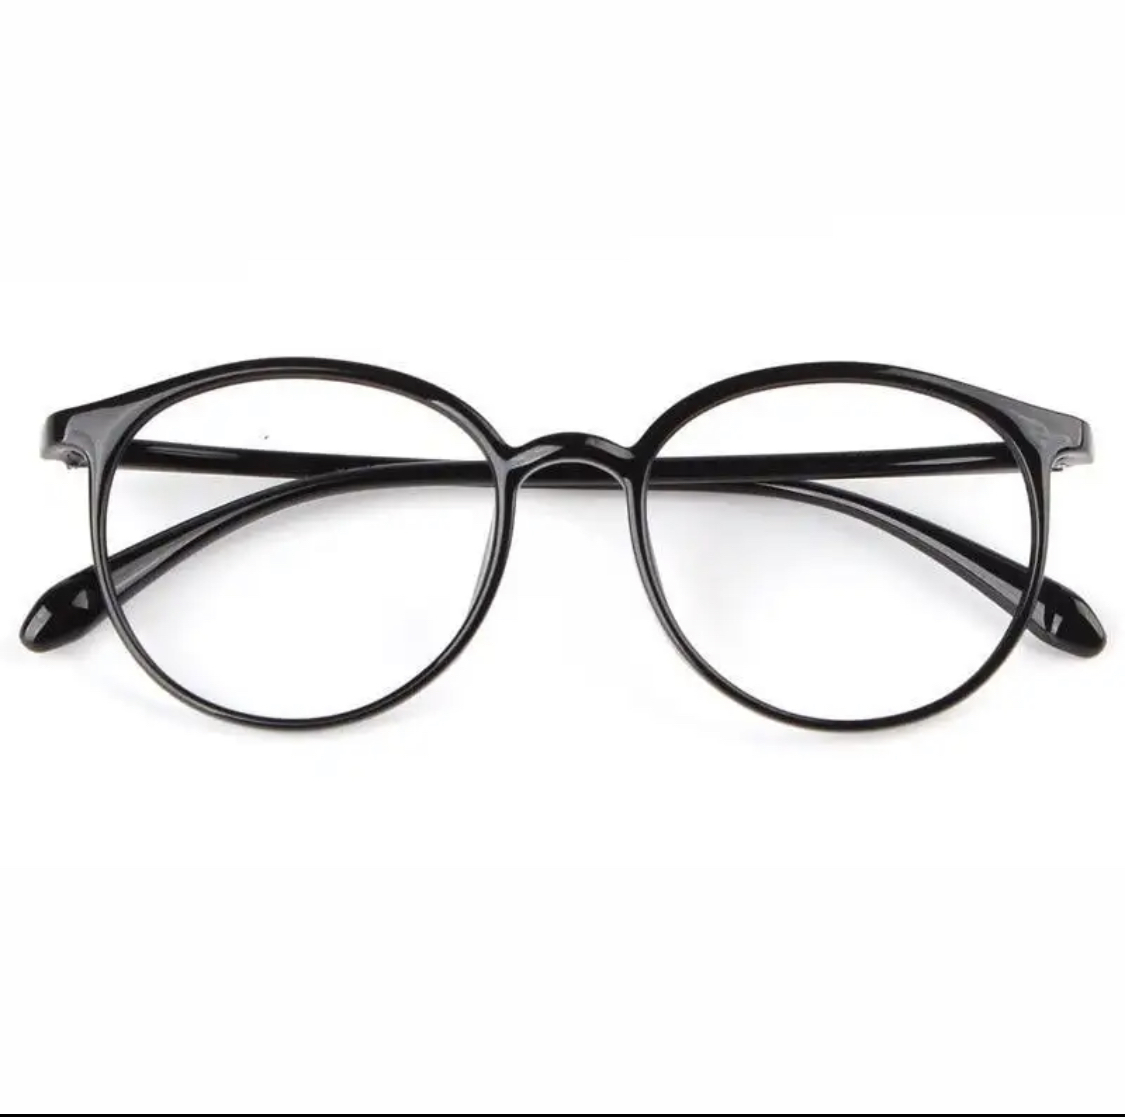  очки для чтения  +1.5  Бостон   простой   черный   черный ...    ...  легкий (по весу)   очки для чтения 